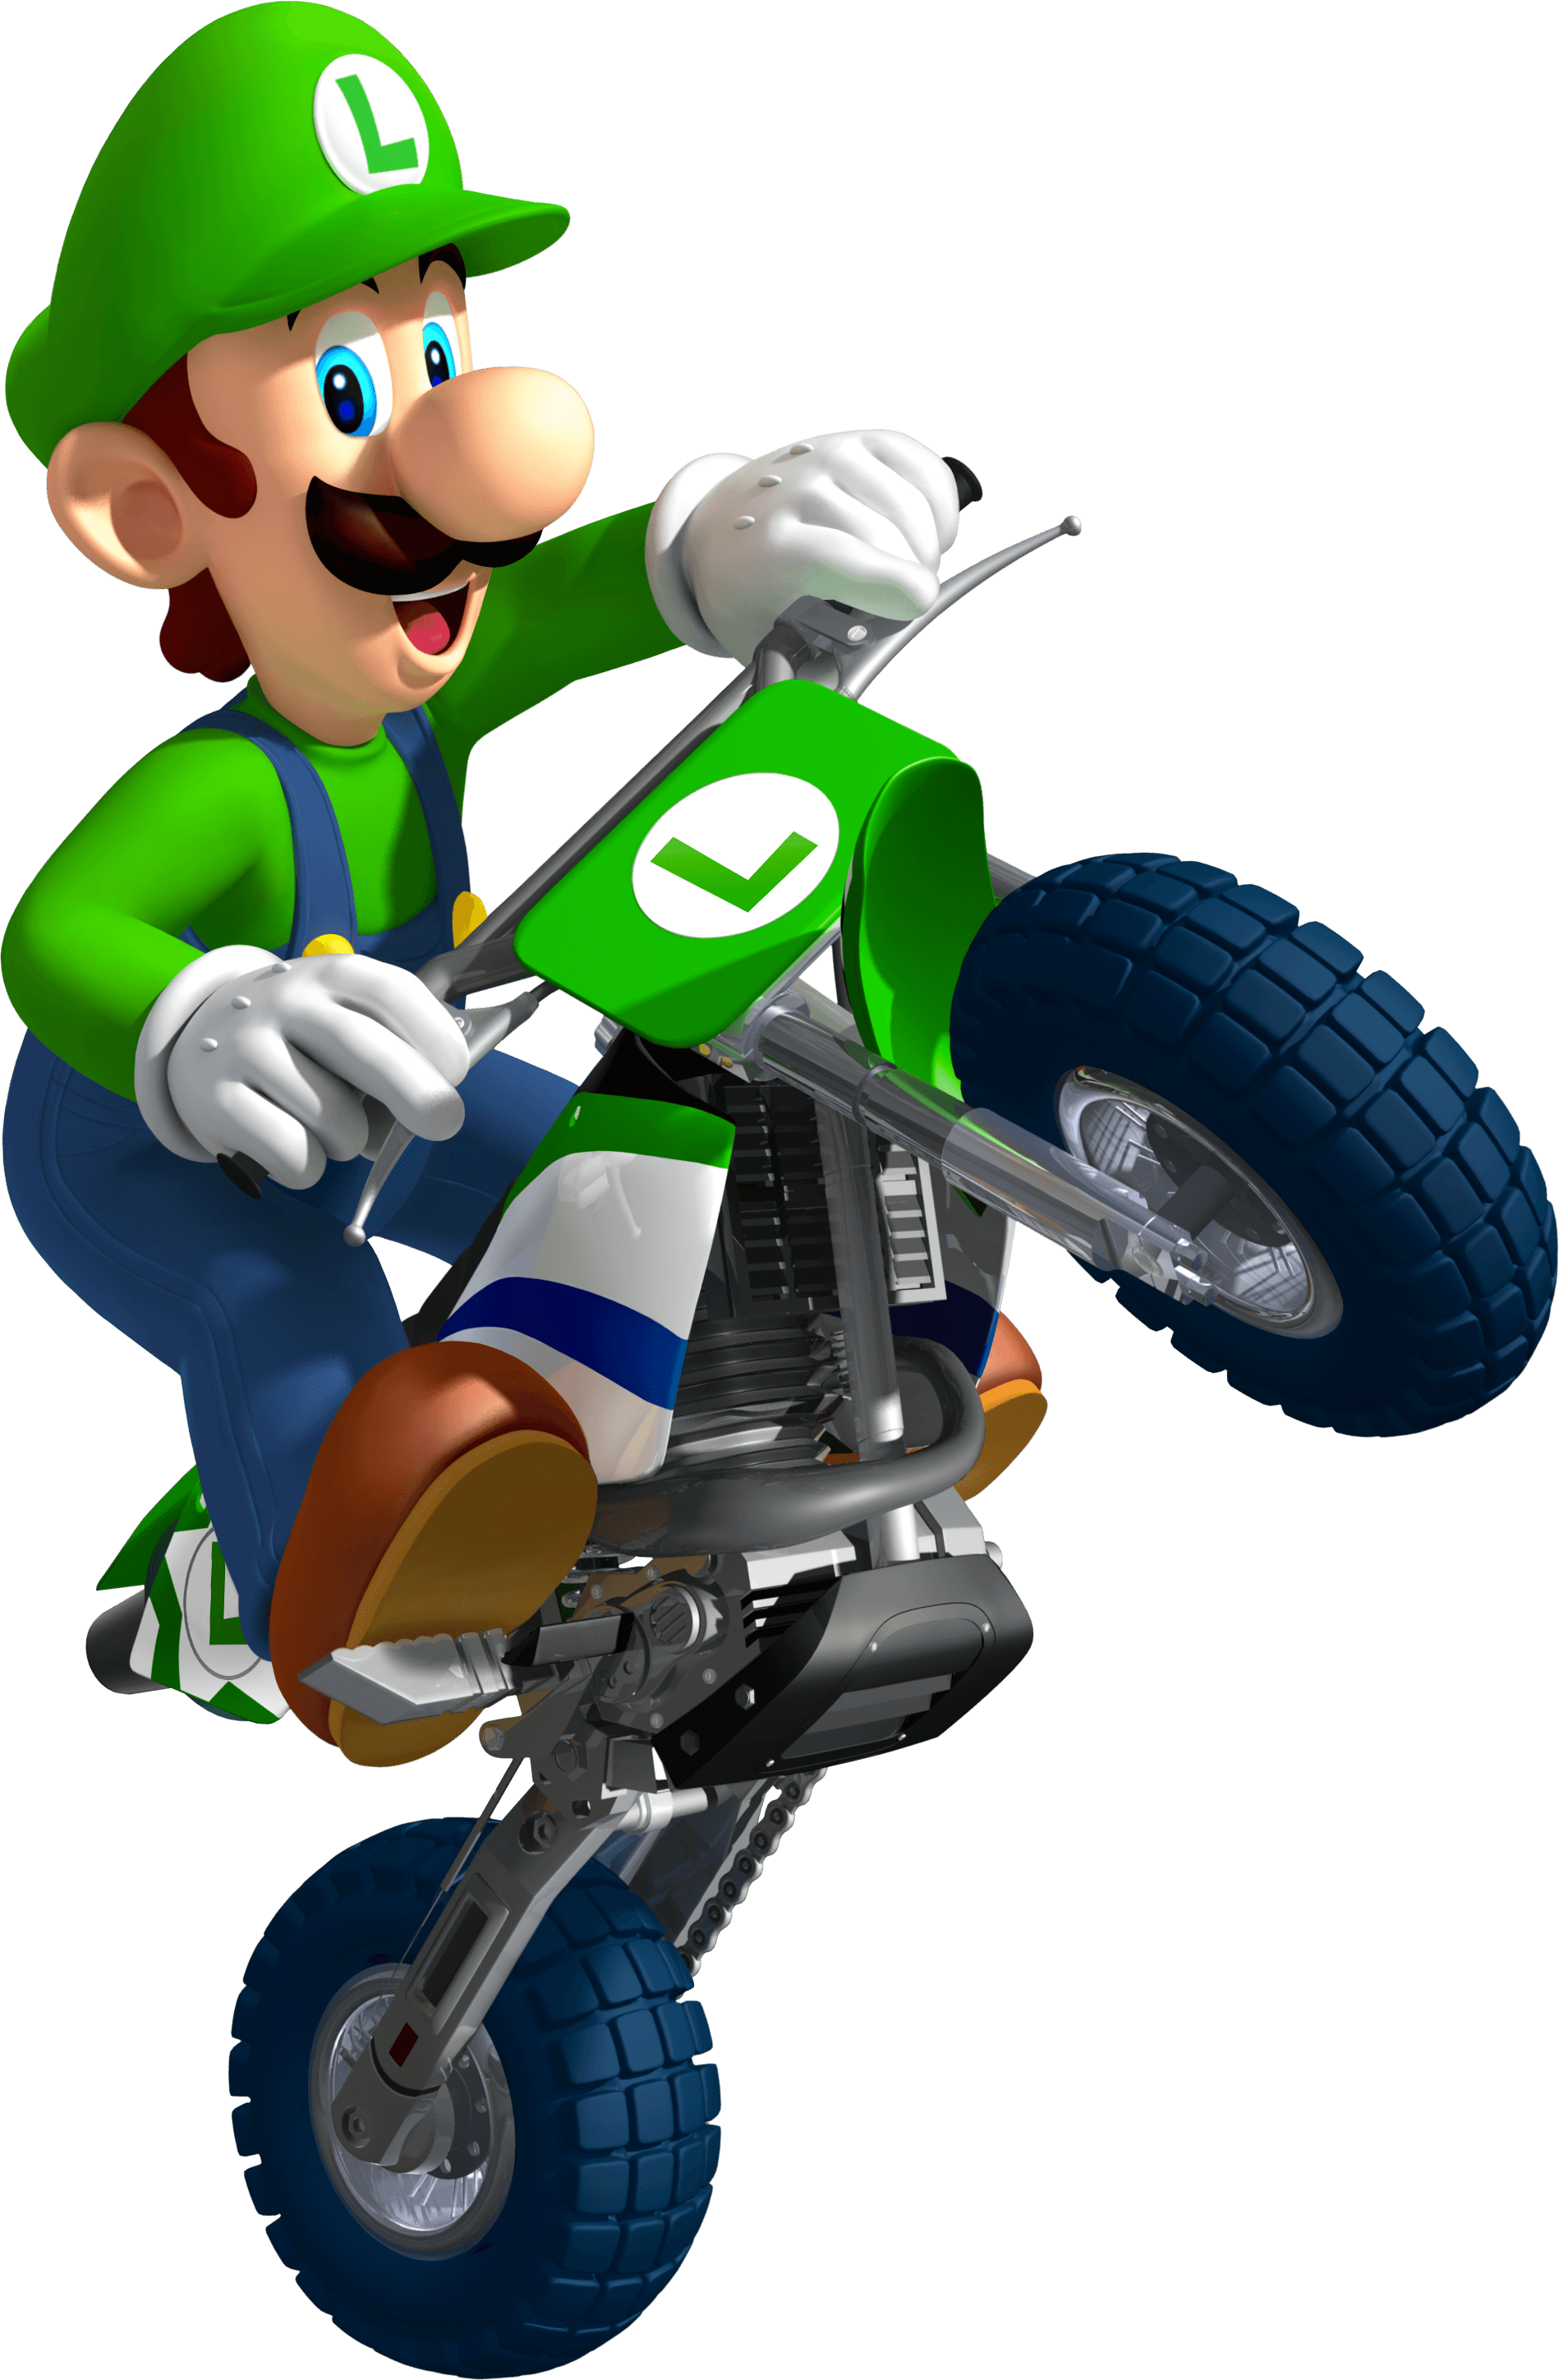 Luigi riding a motorcycle doing a wheelie.